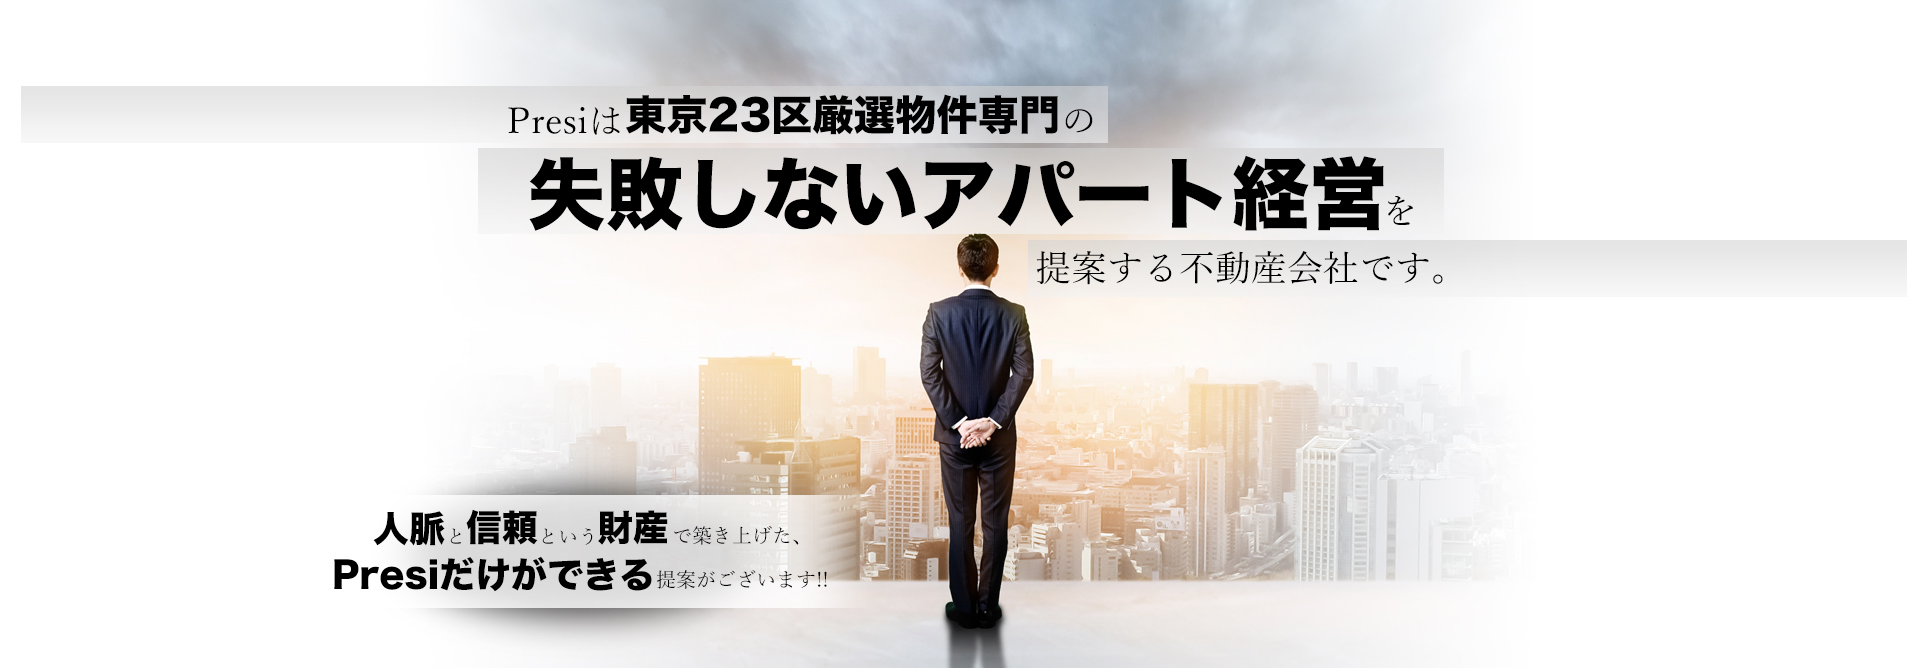 Presiは東京23区厳選物件専門の失敗しないアパート経営を提案する不動産会社です。